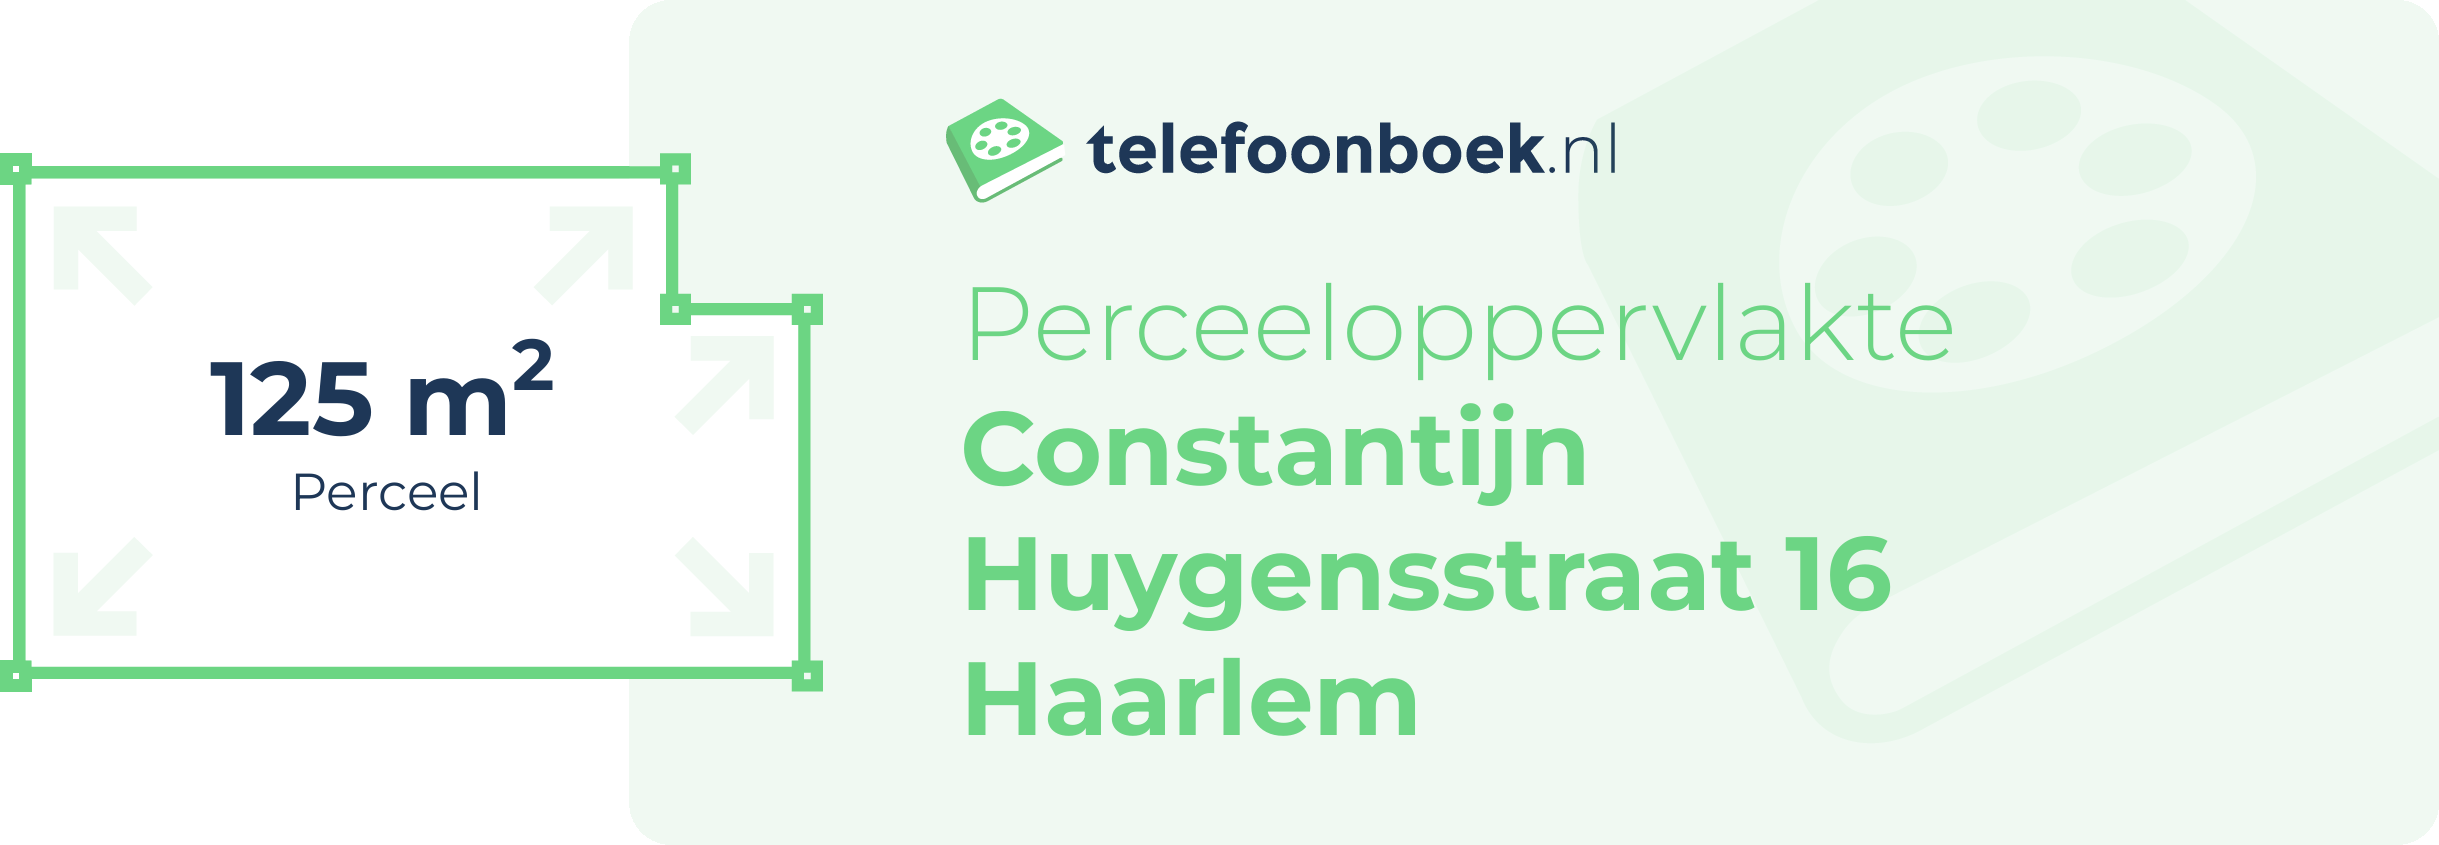 Perceeloppervlakte Constantijn Huygensstraat 16 Haarlem